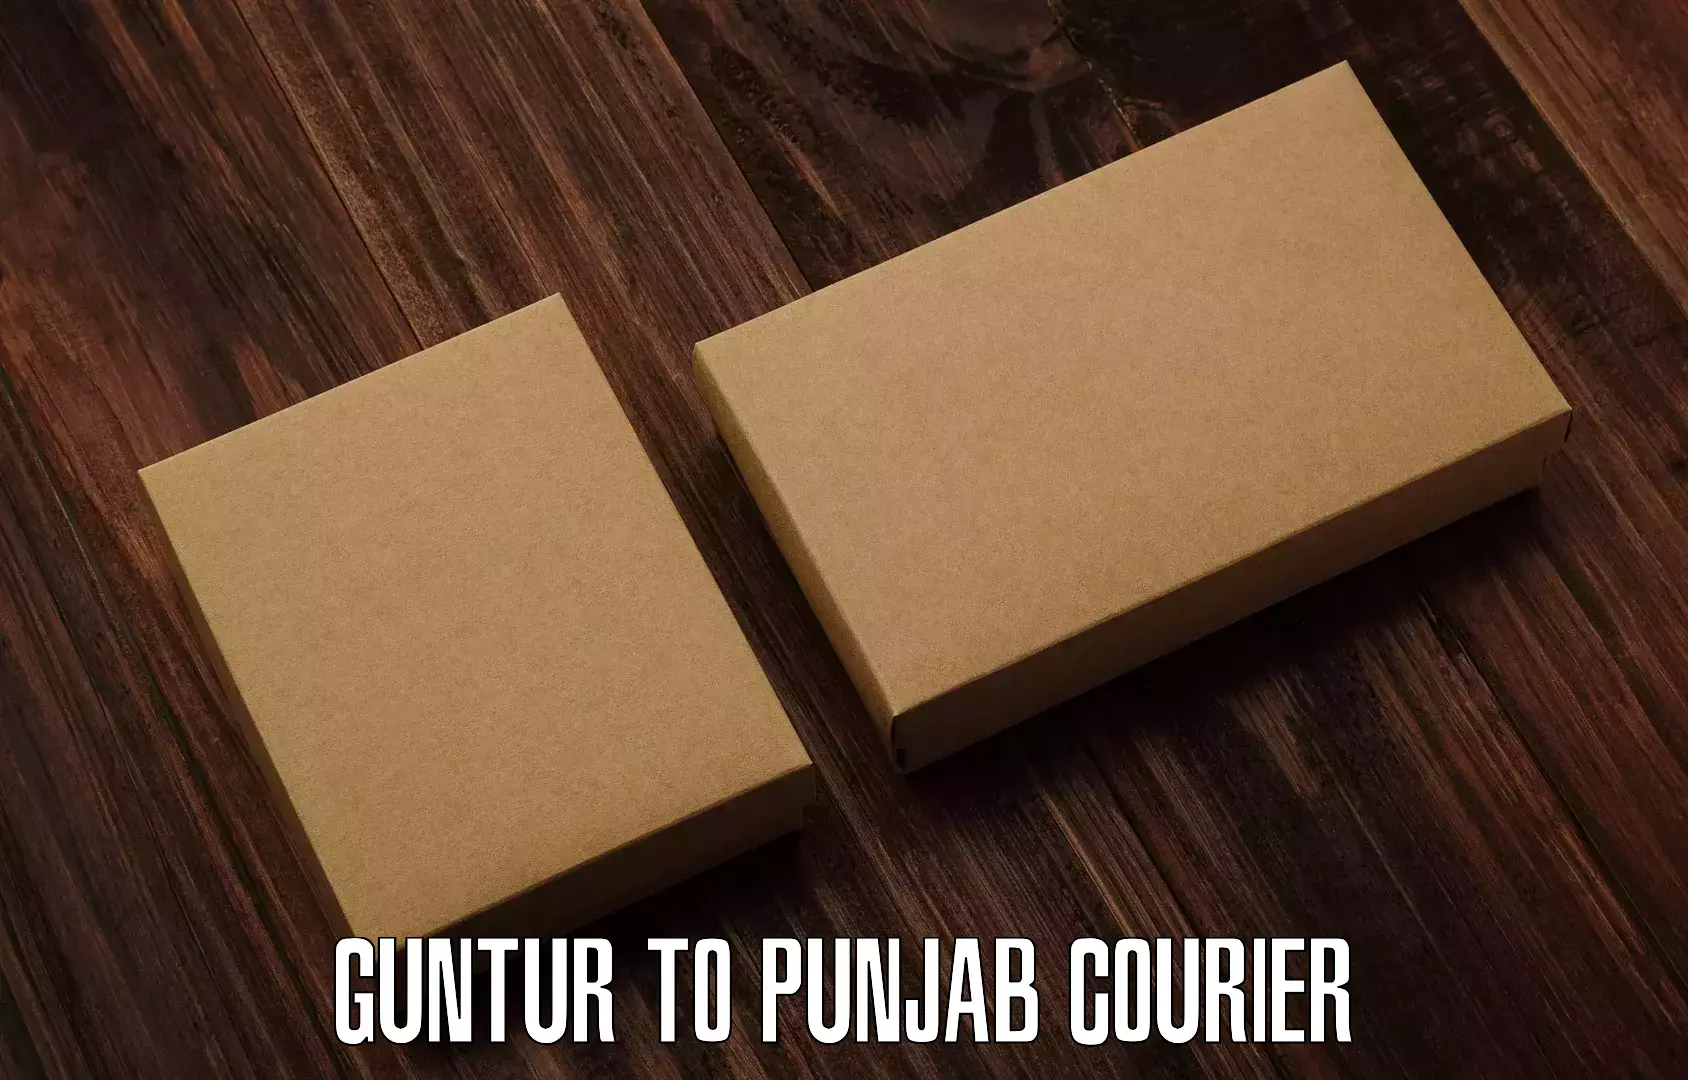 Modern parcel services Guntur to Punjab